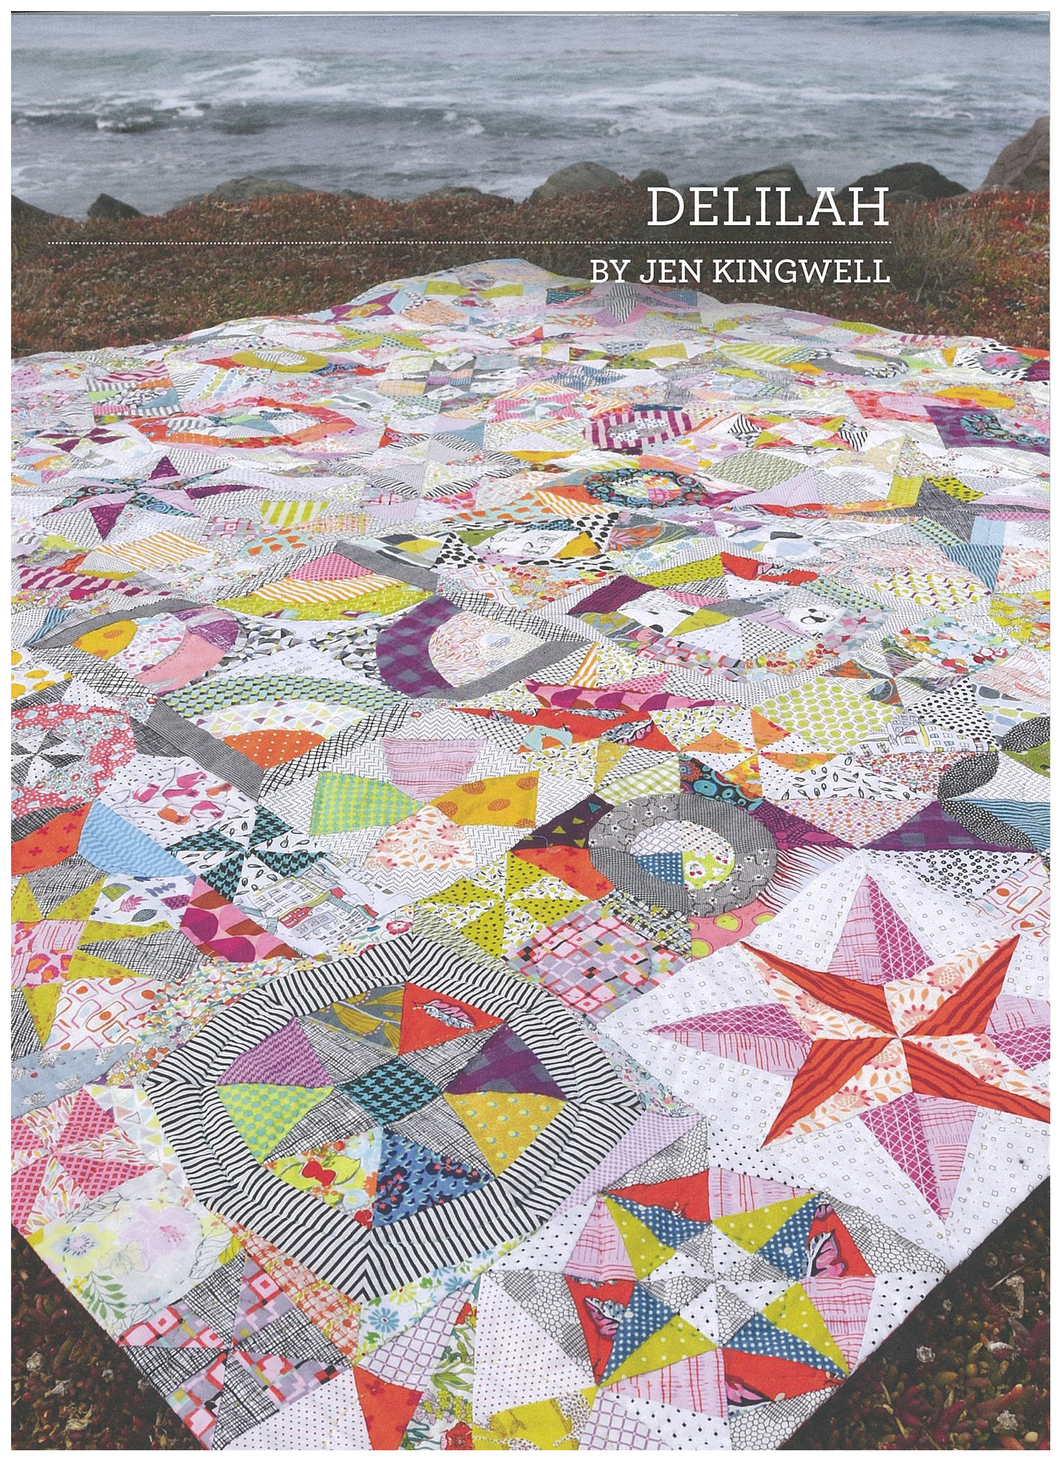 Delilah by Jen Kingwell